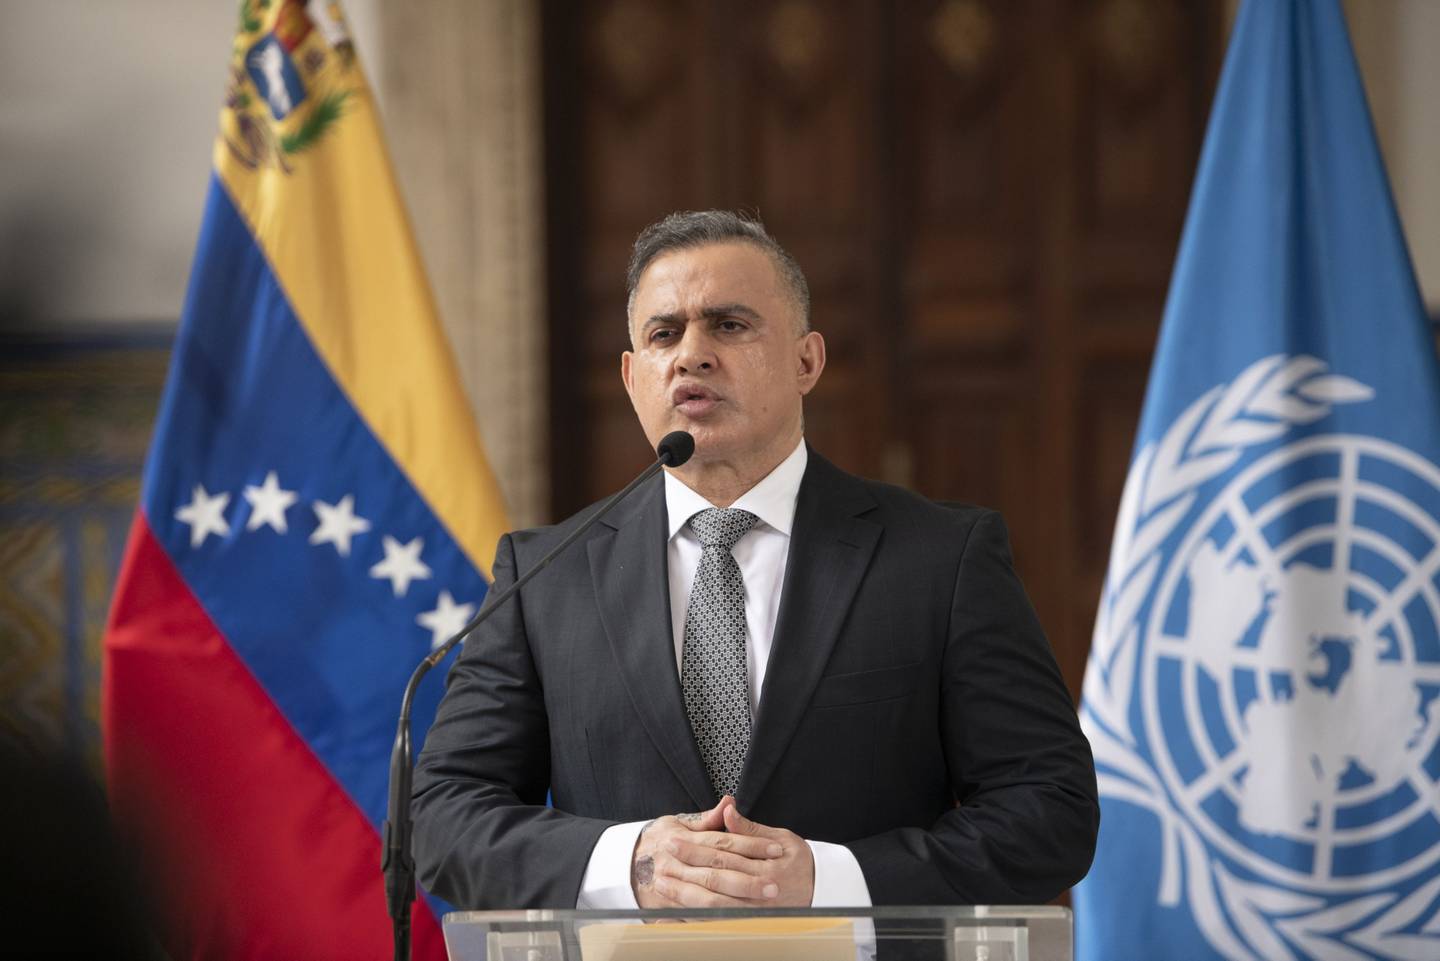 El fiscal de Venezuela, Tarek William Saab, informó del inicio de una investigación penal contra el gobernador opositor Antonio Barreto Sira tras el desbordamiento de un río en el estado Anzoátegui por las fuertes lluvias de los últimos días.dfd